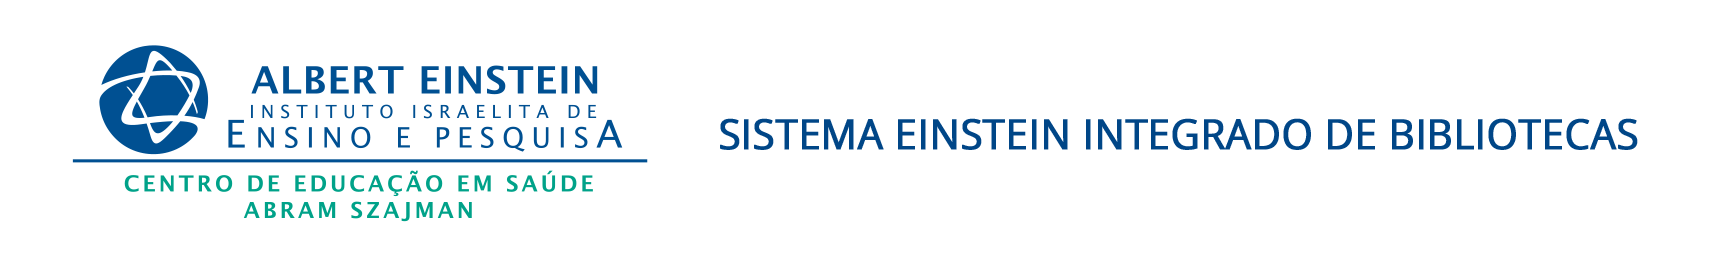 Einstein_logo_biblioteca.png